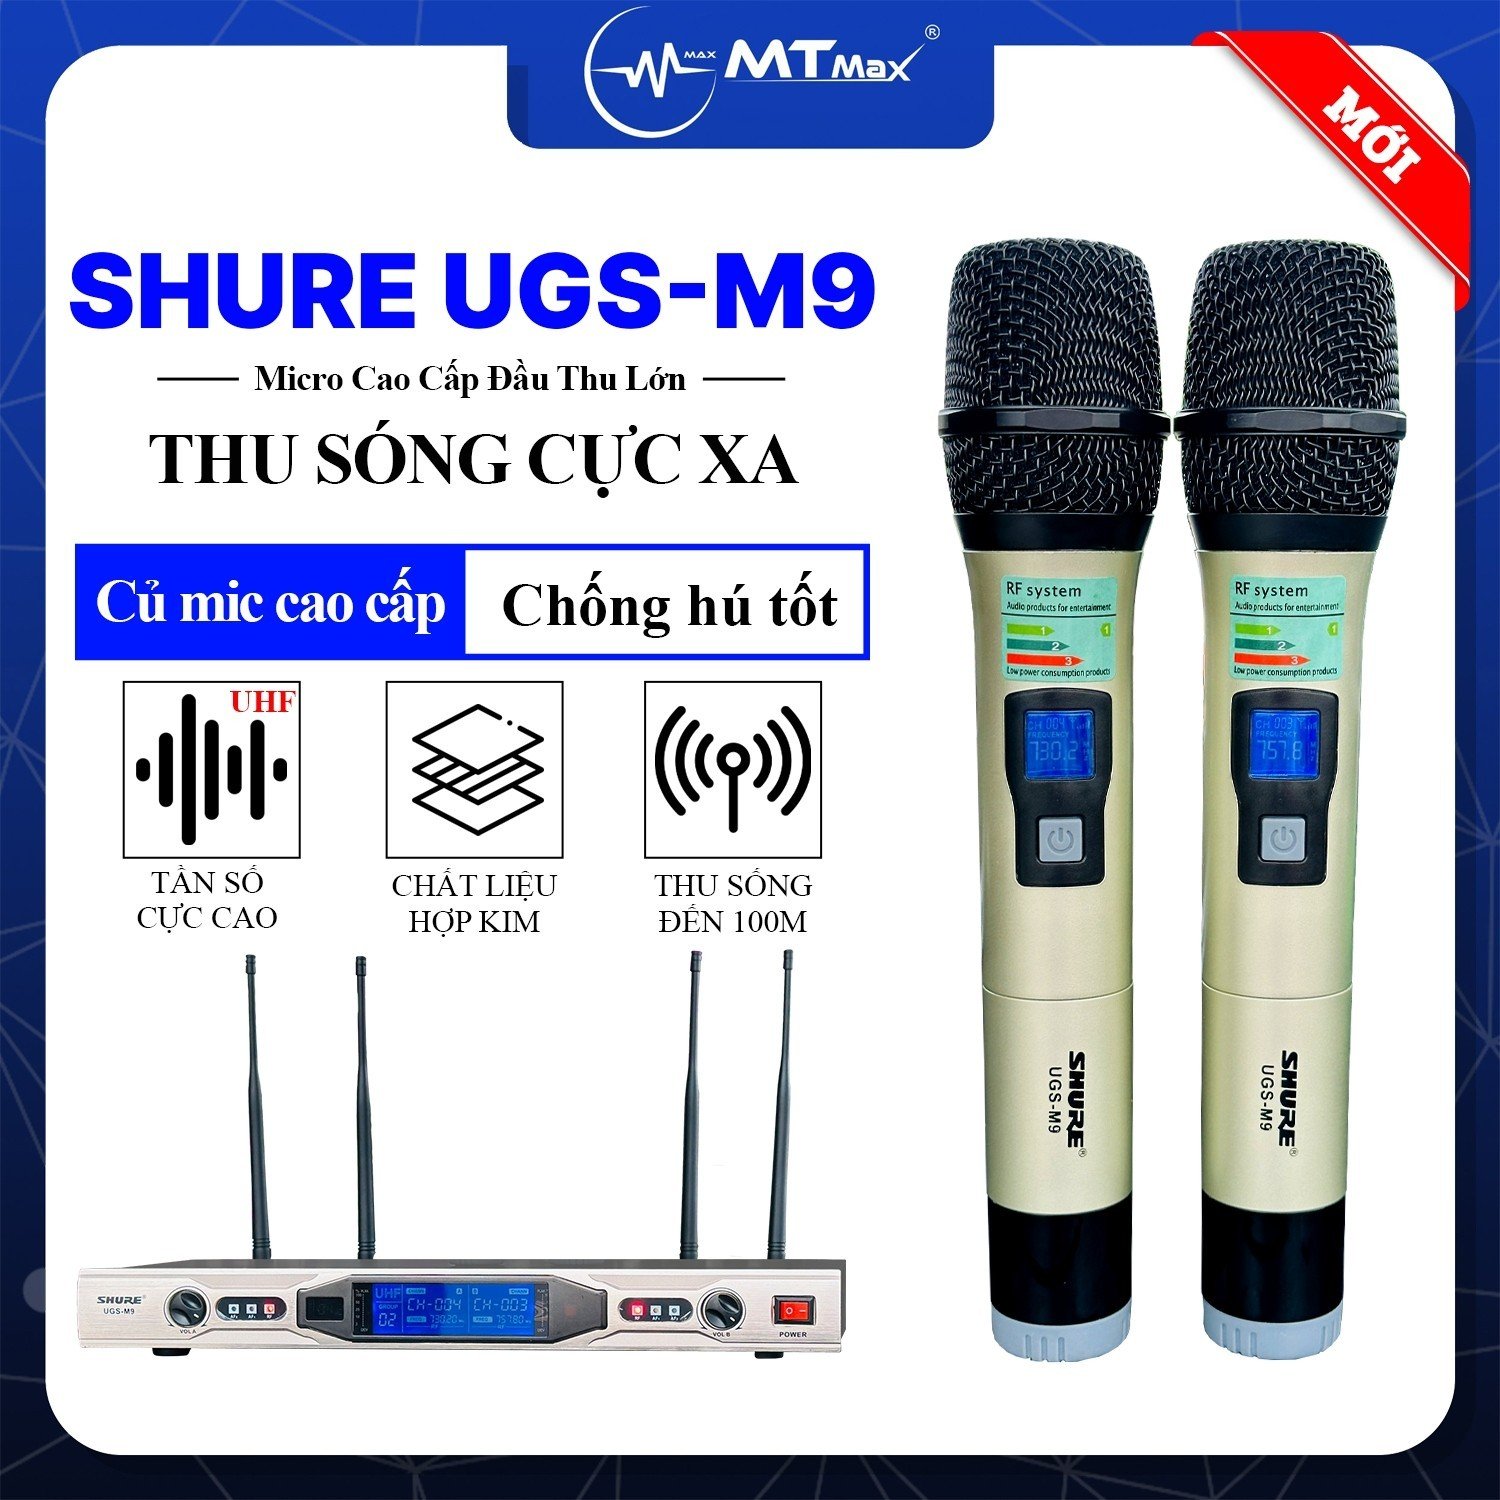 Micro Đầu Thu Lớn SHURE UGS M9 - Siêu Phẩm Micro Karaoke 4 Râu Cao Cấp Giá Rẻ Lọc Âm Nâng Giọng Chống Hú Rè Cực Tốt Bắt Sóng Xa Đến 100m hàng chính hãng